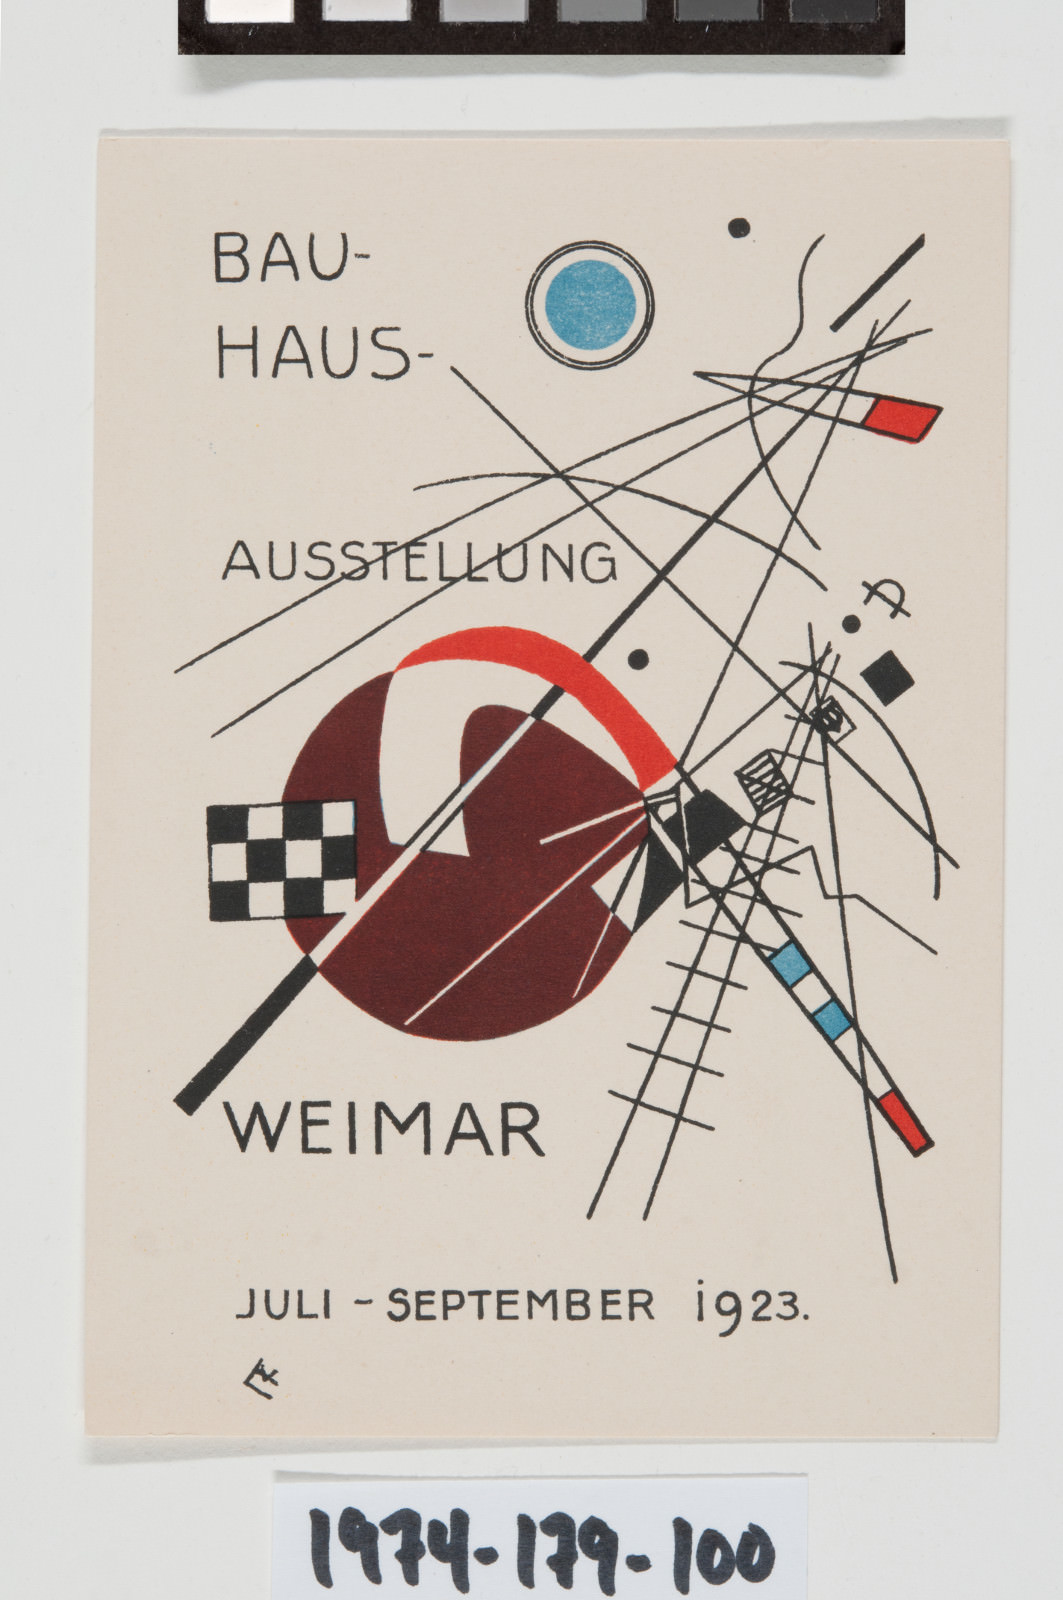 Figue. 6 - Vasily Kandinsky, numéro de message 3, L'exposition au Bauhaus, Weimar, Juillet-Septembre 1923, Lithographie couleur, Image: 5 3/8 x 3 3/4 polegadas (13.7 x 9.5 cm) feuille: 5 15/16 x 4 1/poucesas (15.1 xx10.cmcm). Philadelphia Museum of Art, Présent Carl Zigrosser, 1974-179-100.